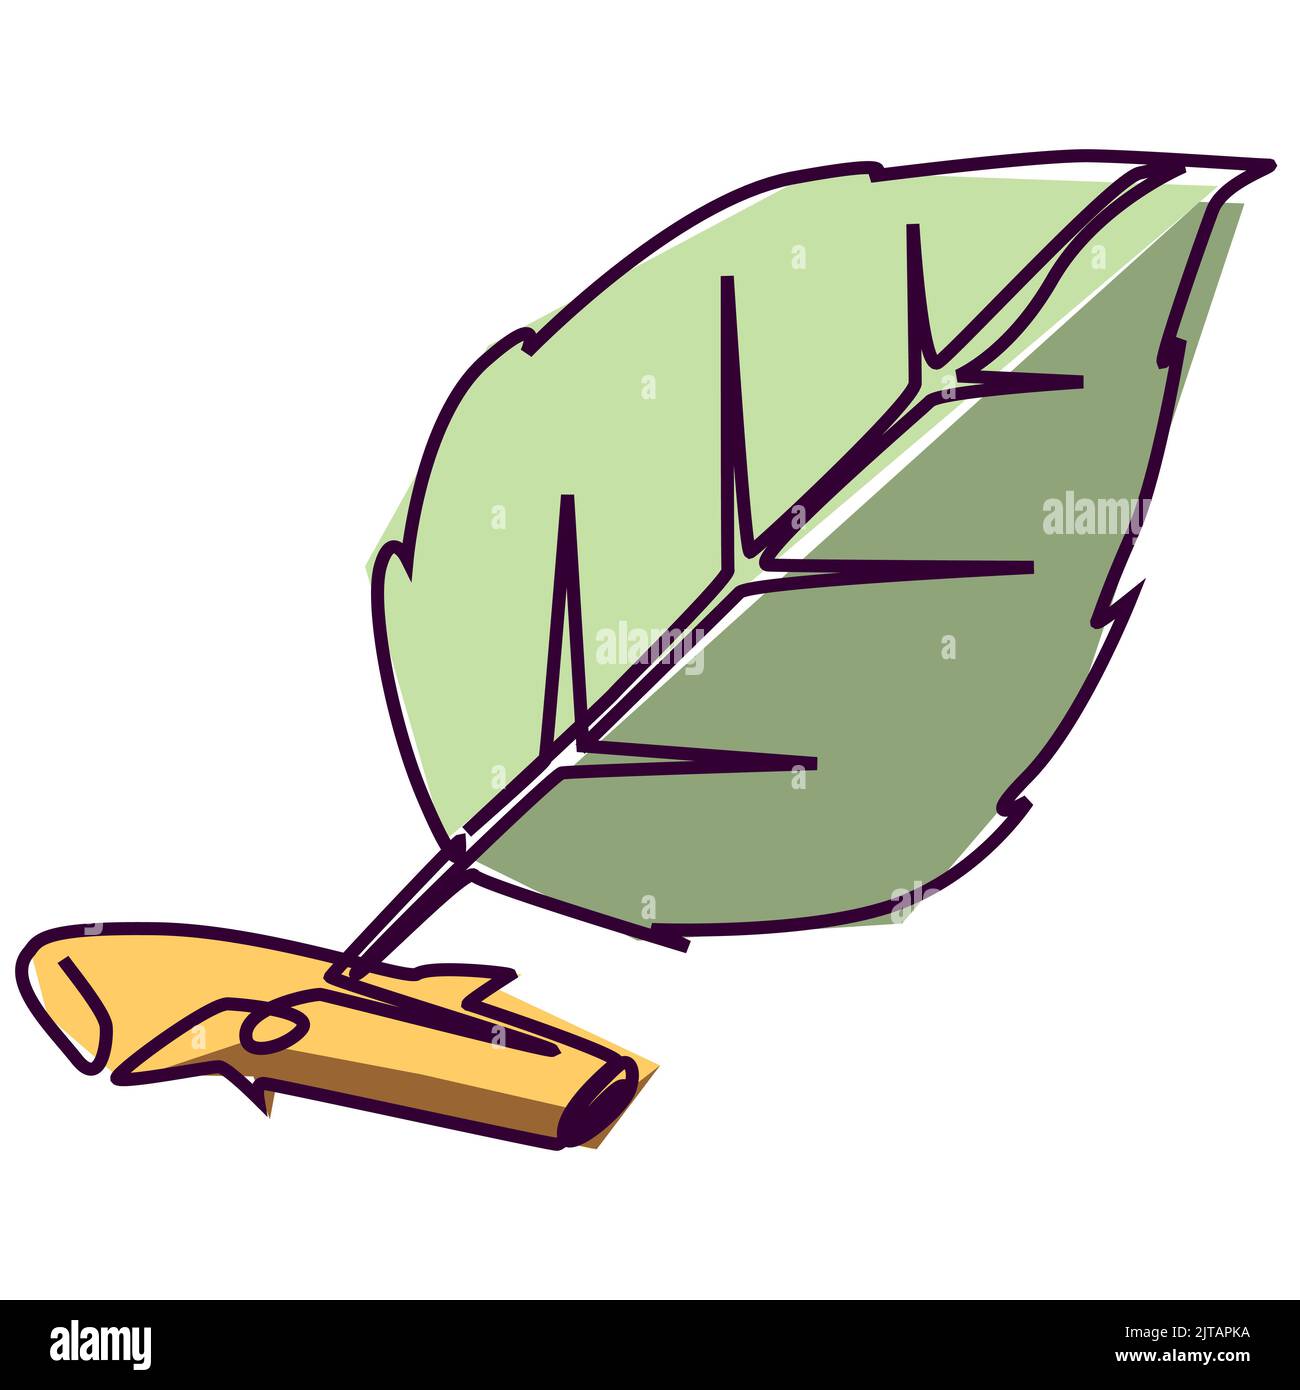 Fortlaufende Einzelzeilenzeichnung eines grünen Blattes. Einfache, flache farbige Zeichnung für ein natürliches und umweltfreundliches Designkonzept Stock Vektor